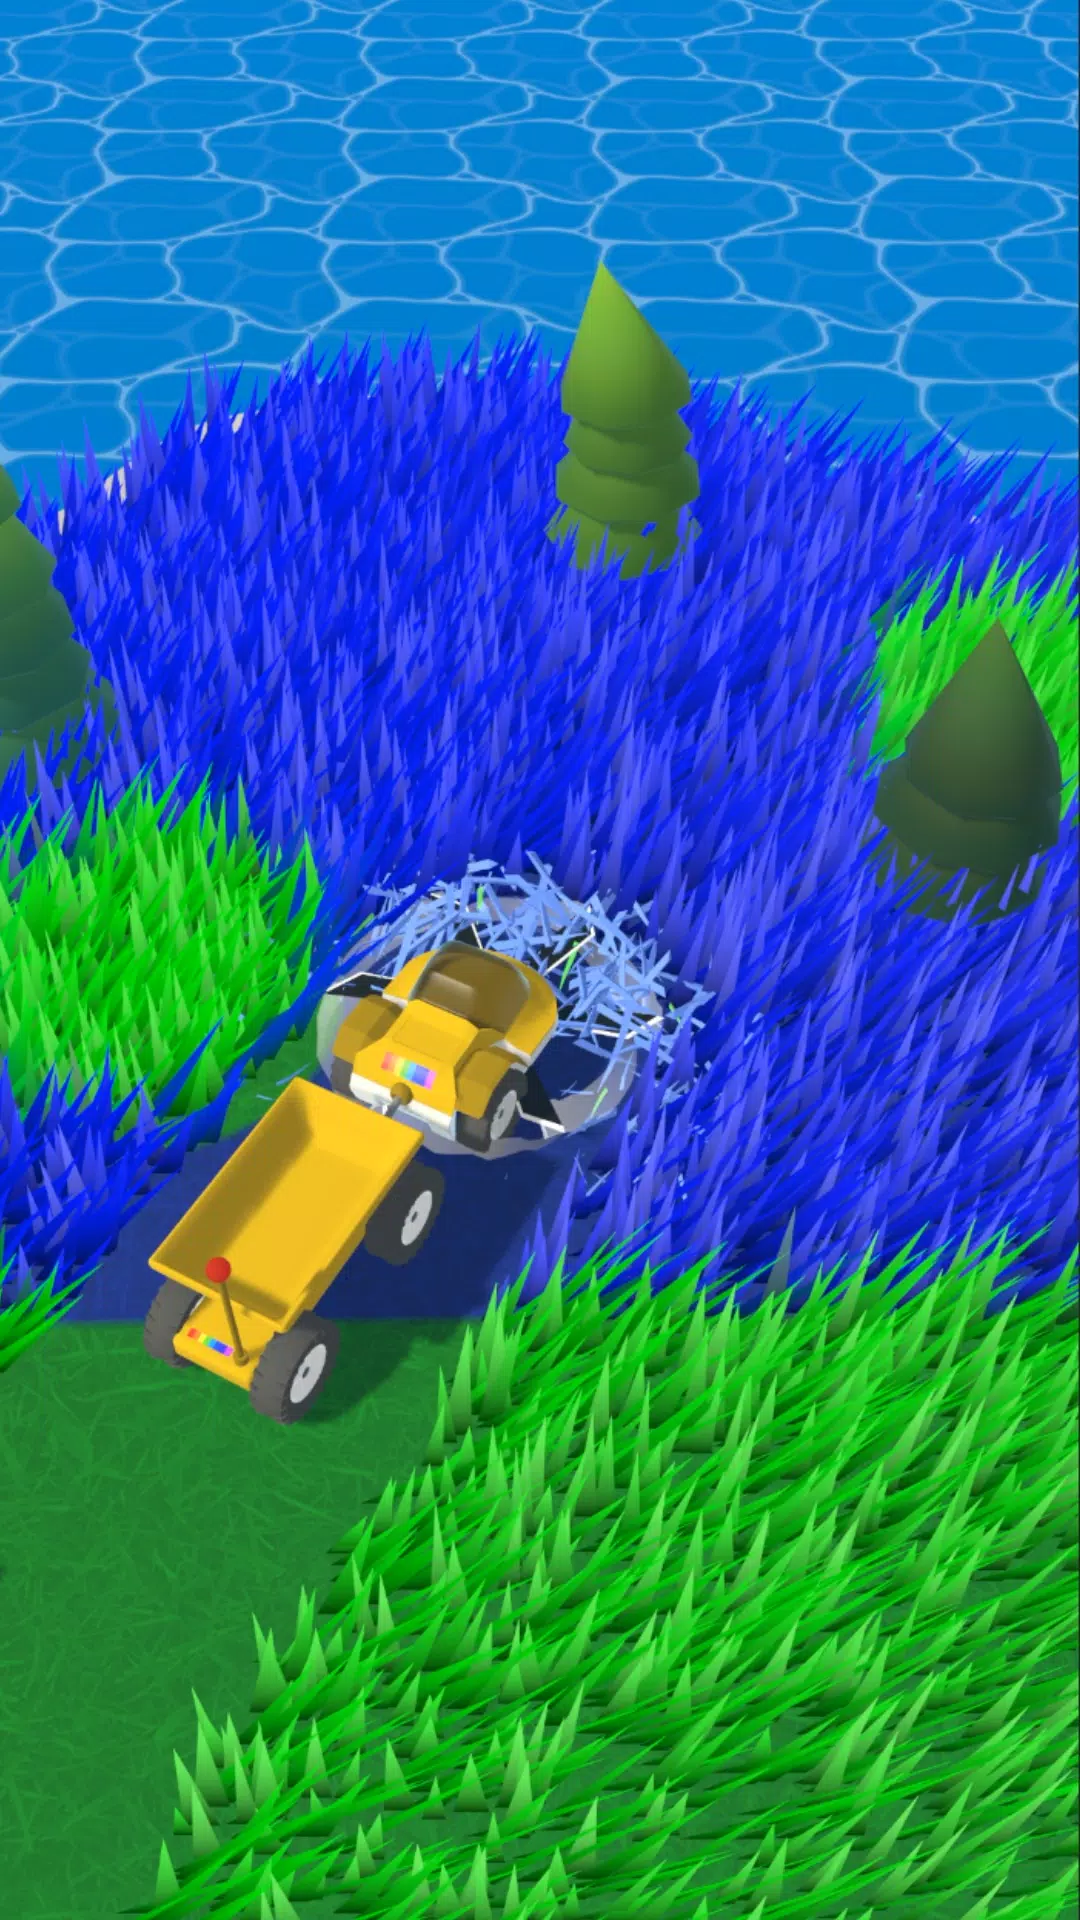 Grass Master: Lawn Mowing 3D Screenshot 2